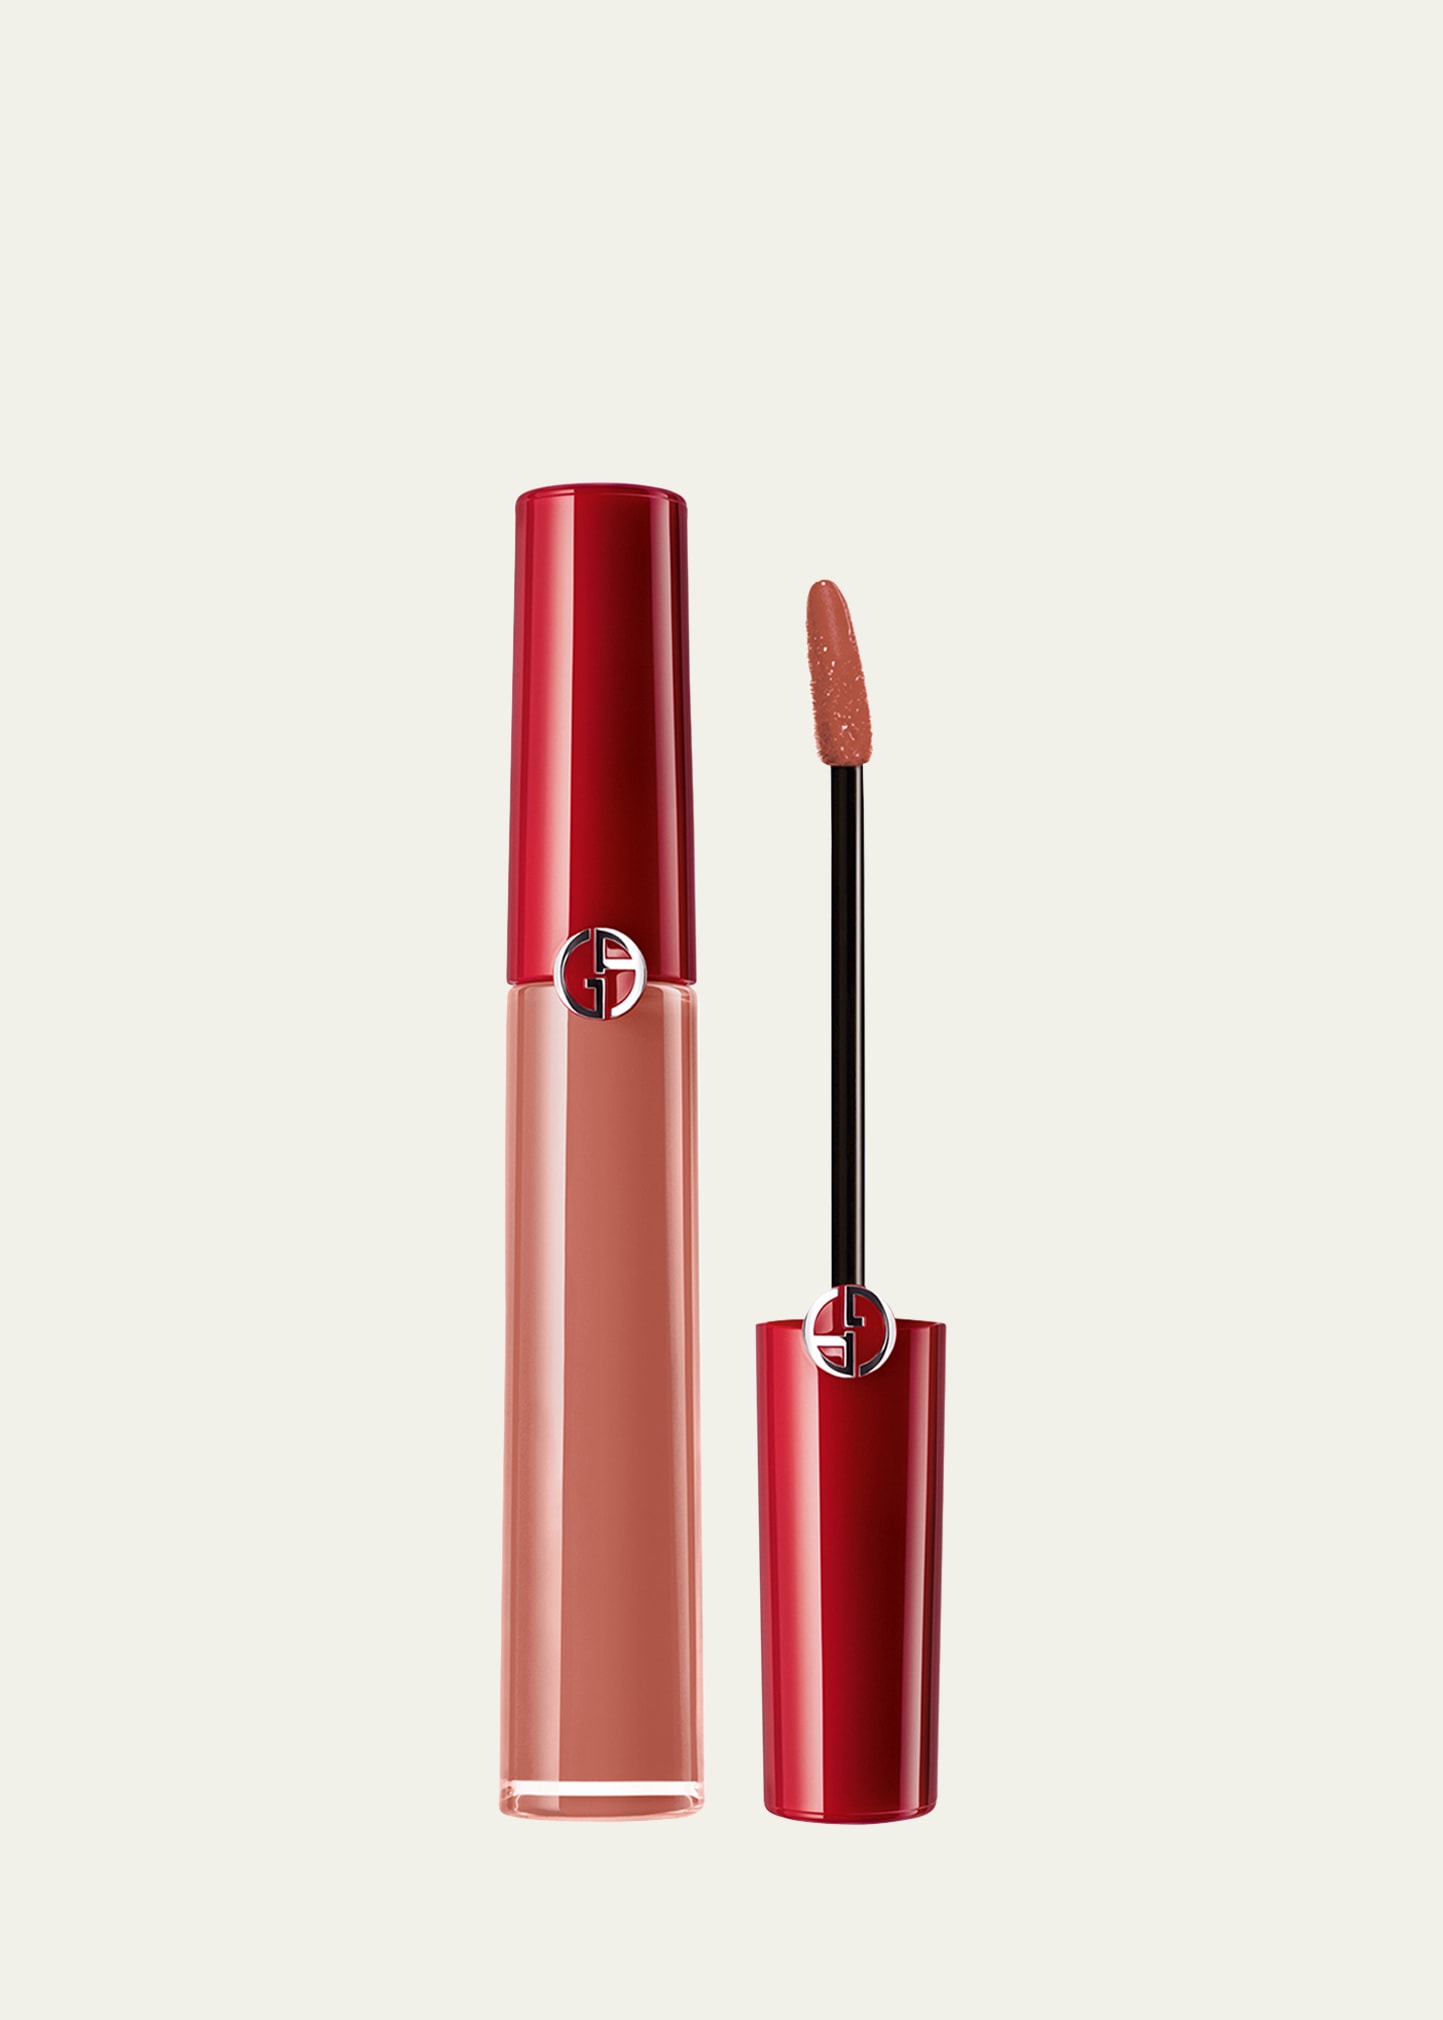 Armani Beauty Lip Maestro Liquid Lipstick In 214